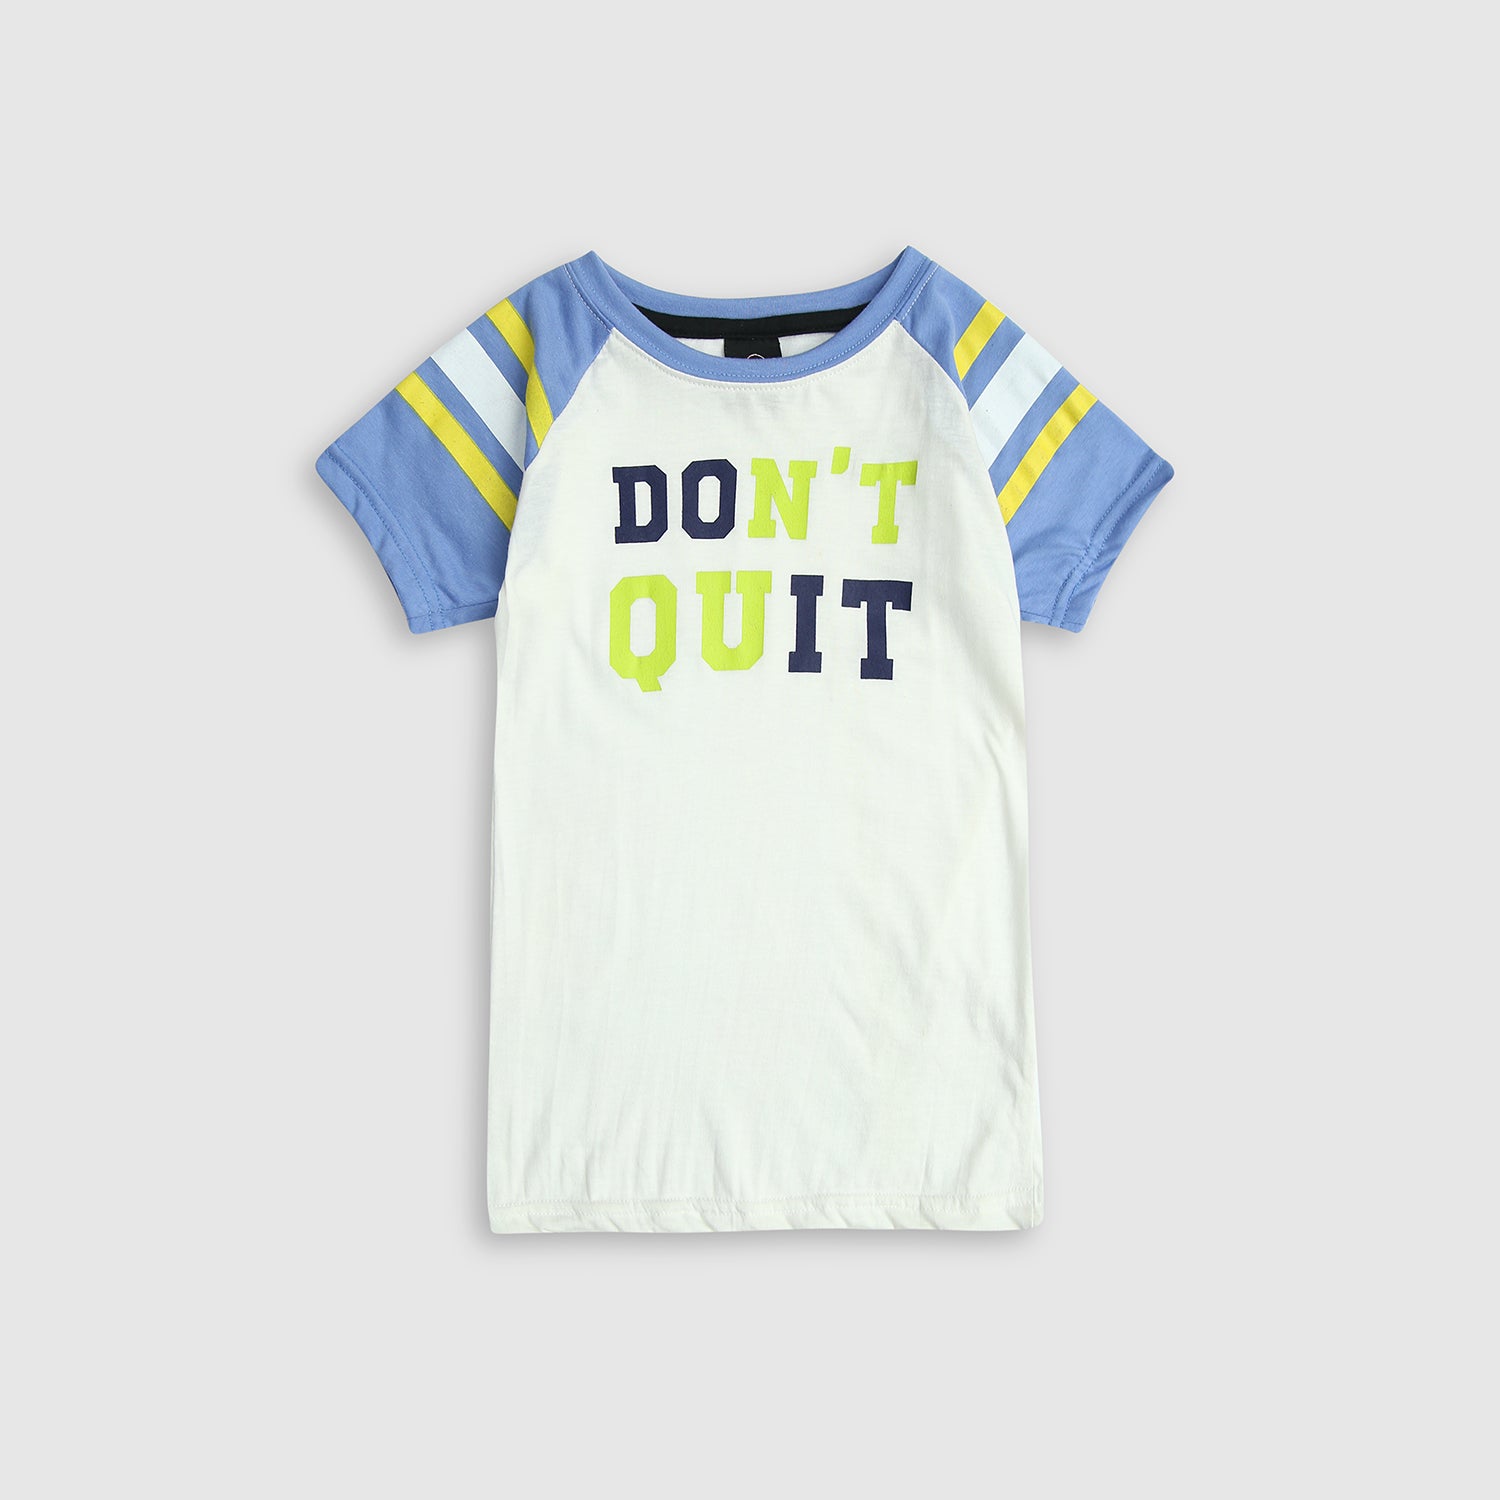 Boys Pure Cotton "Don't Quit" Slogan T-Shirt